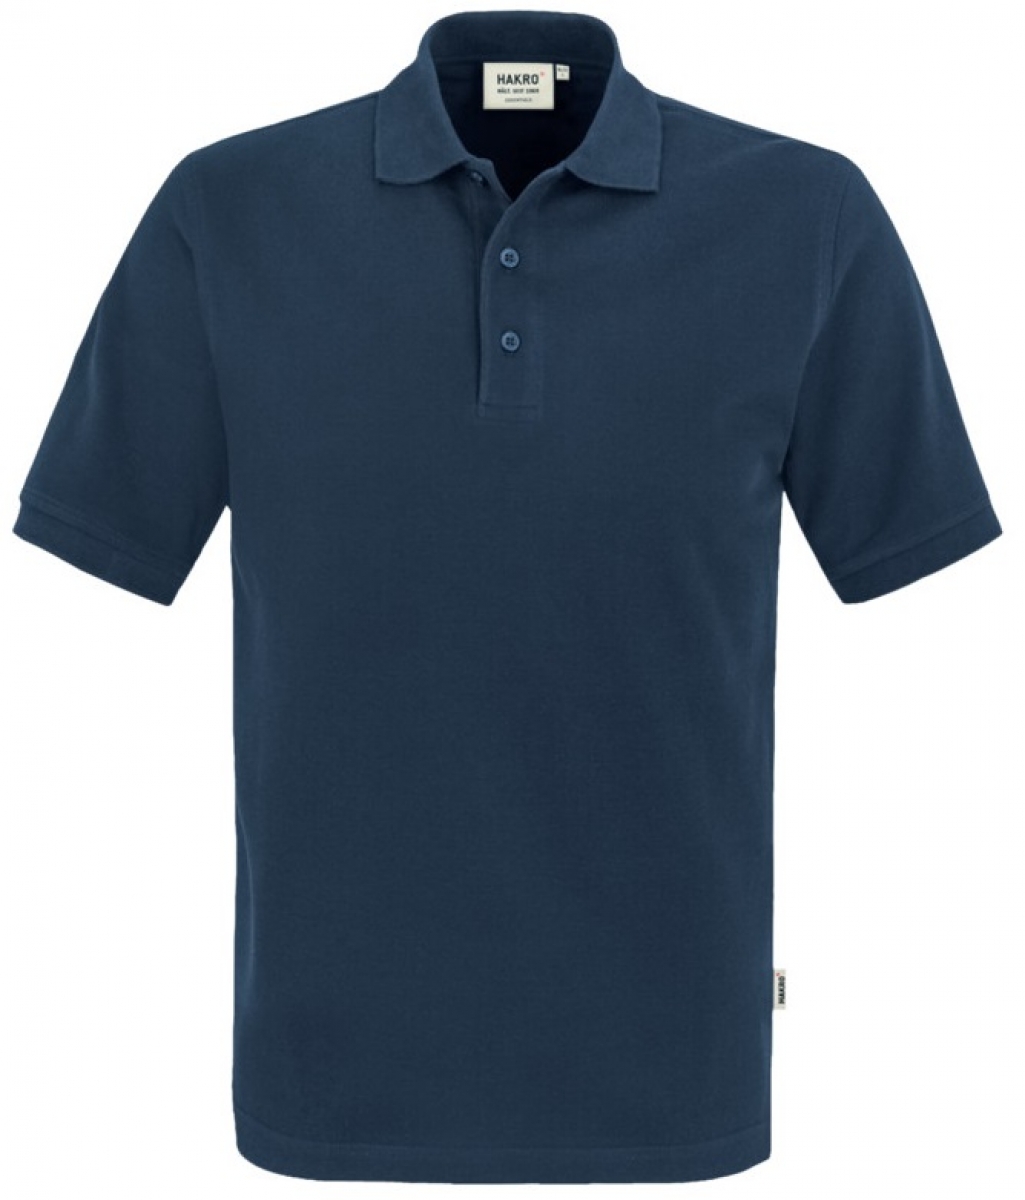 HAKRO-Worker-Shirts, Poloshirt Classic, marine